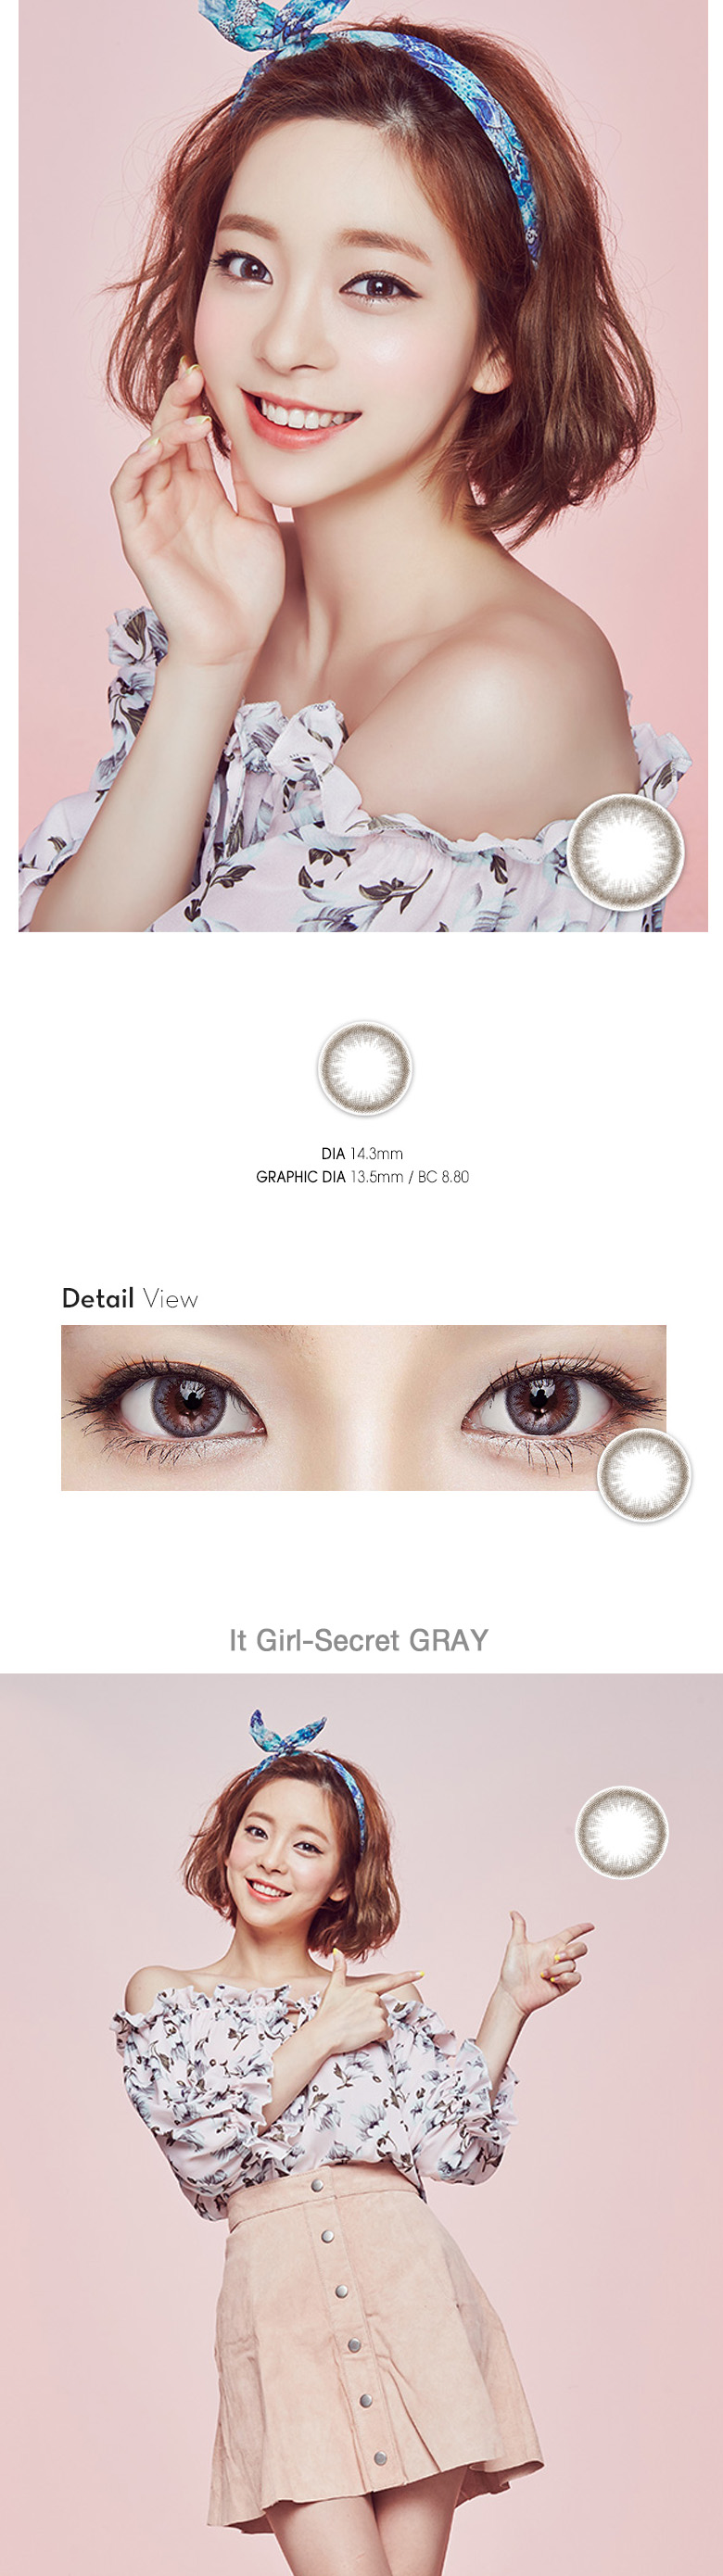 [グレー/GRAY] イット・ガール シークレット - It Girl Secret [14.3mm]